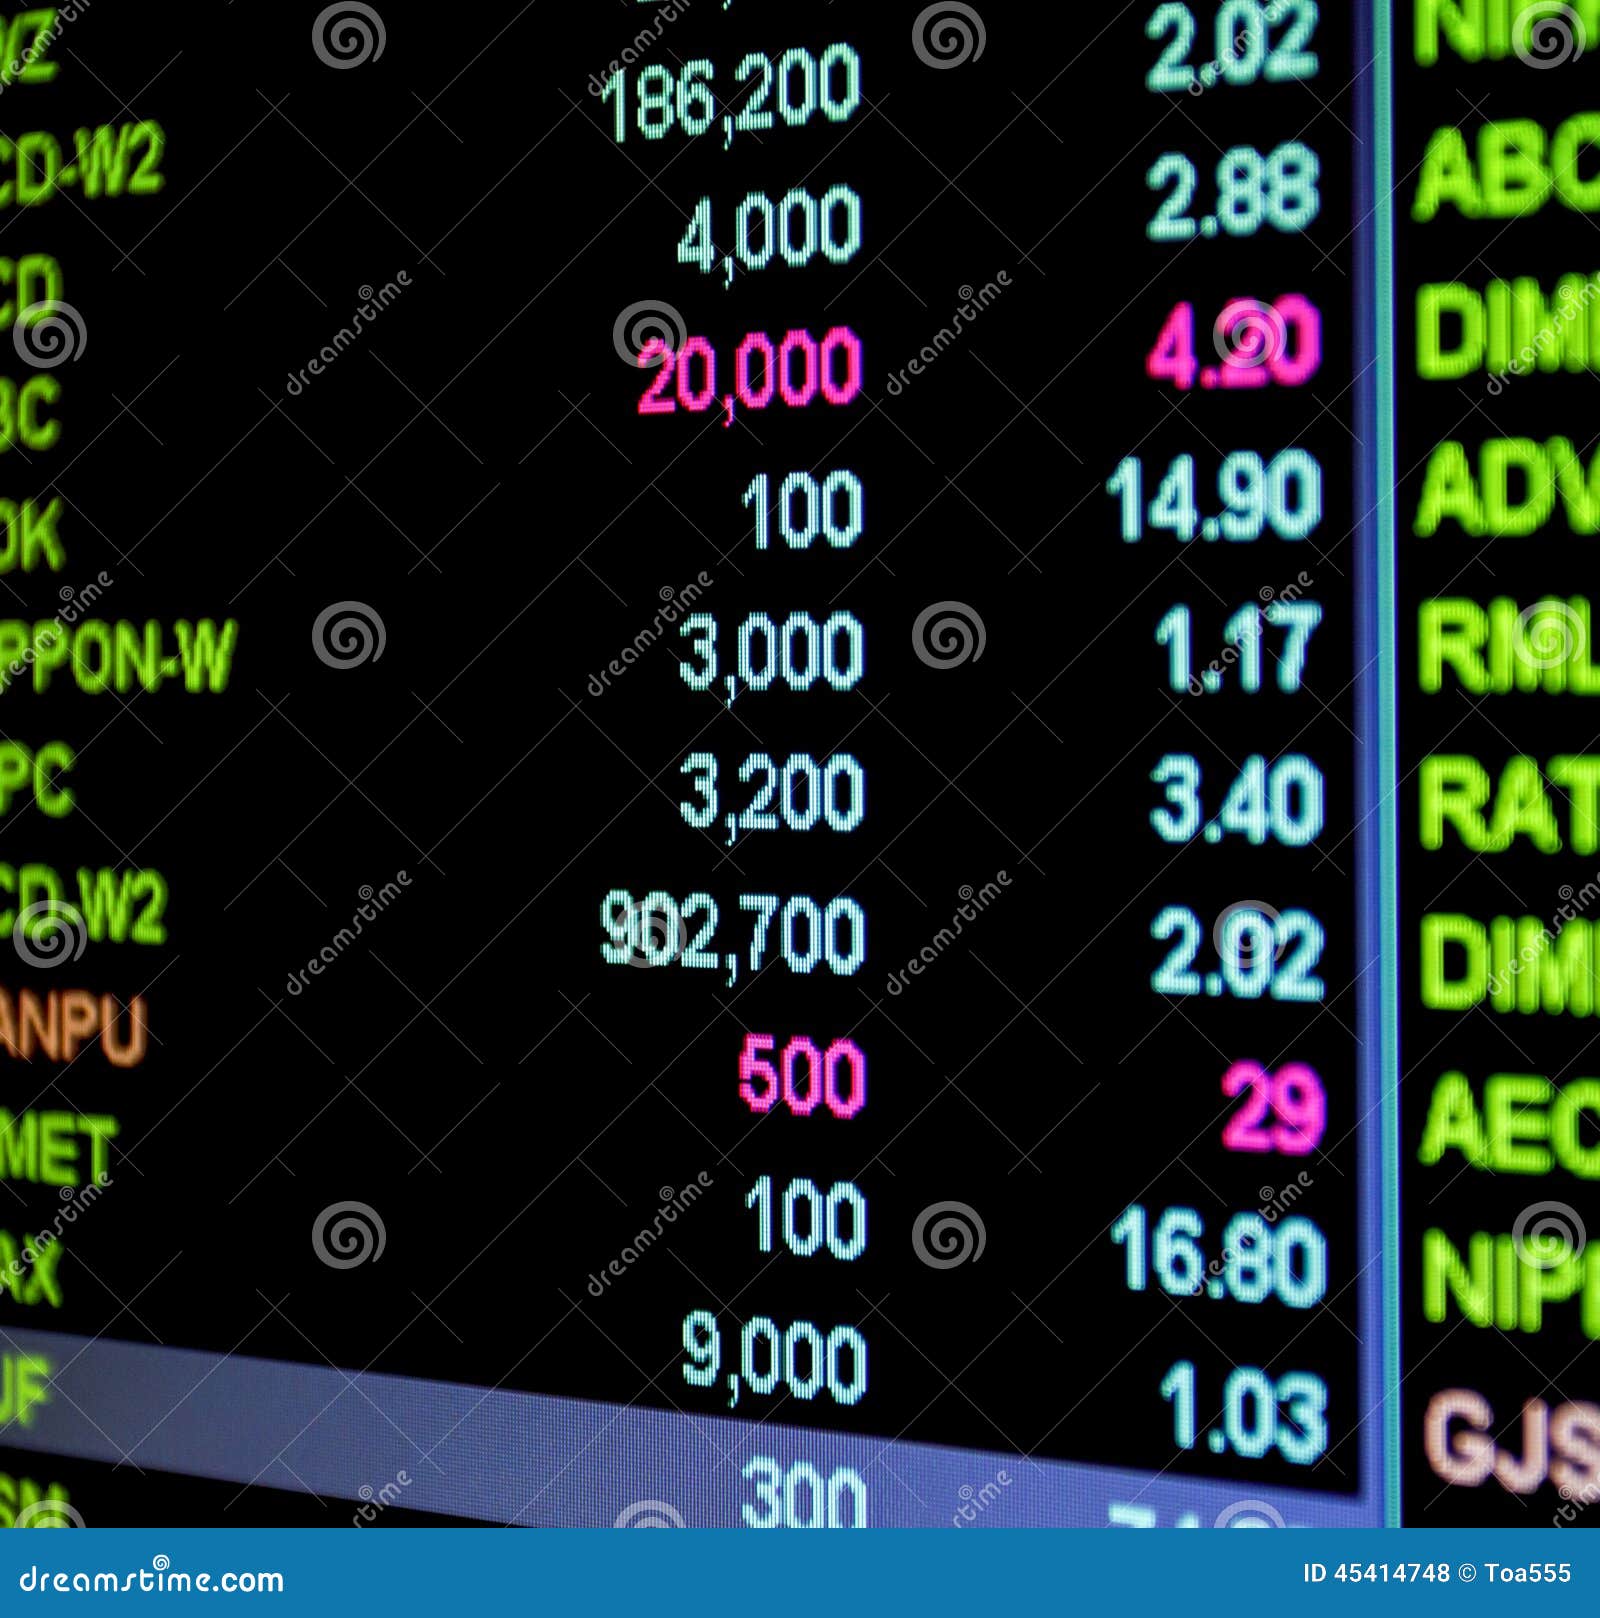 Dimi Stock Chart